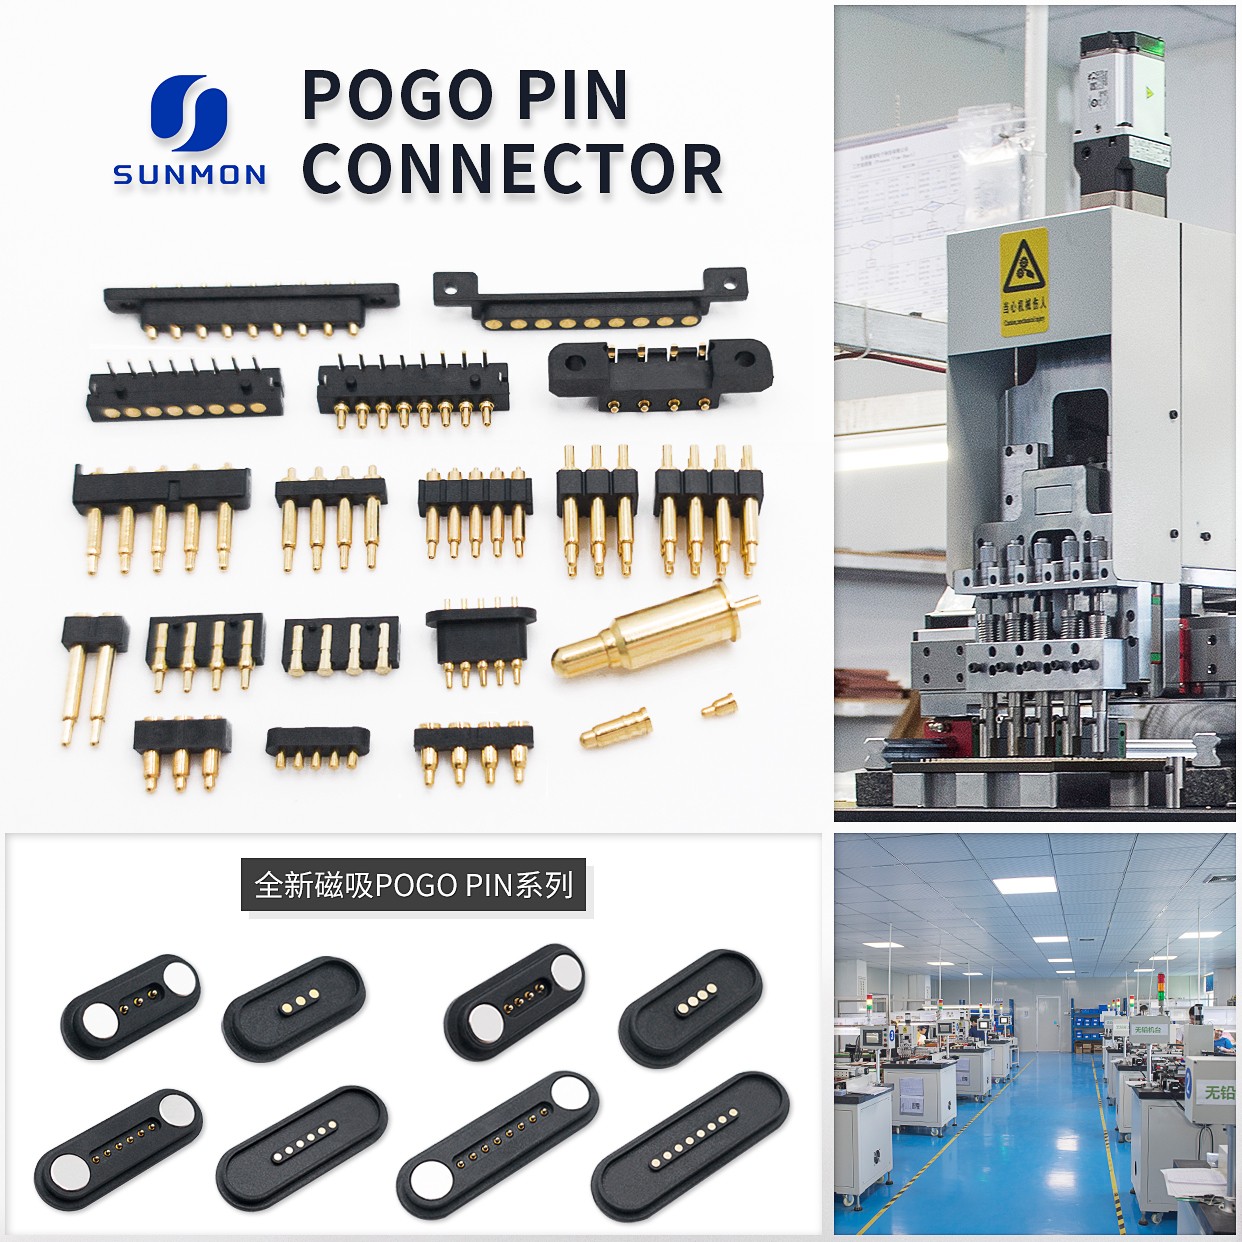 磁吸式9 Pin POGO PIN接口.jpg